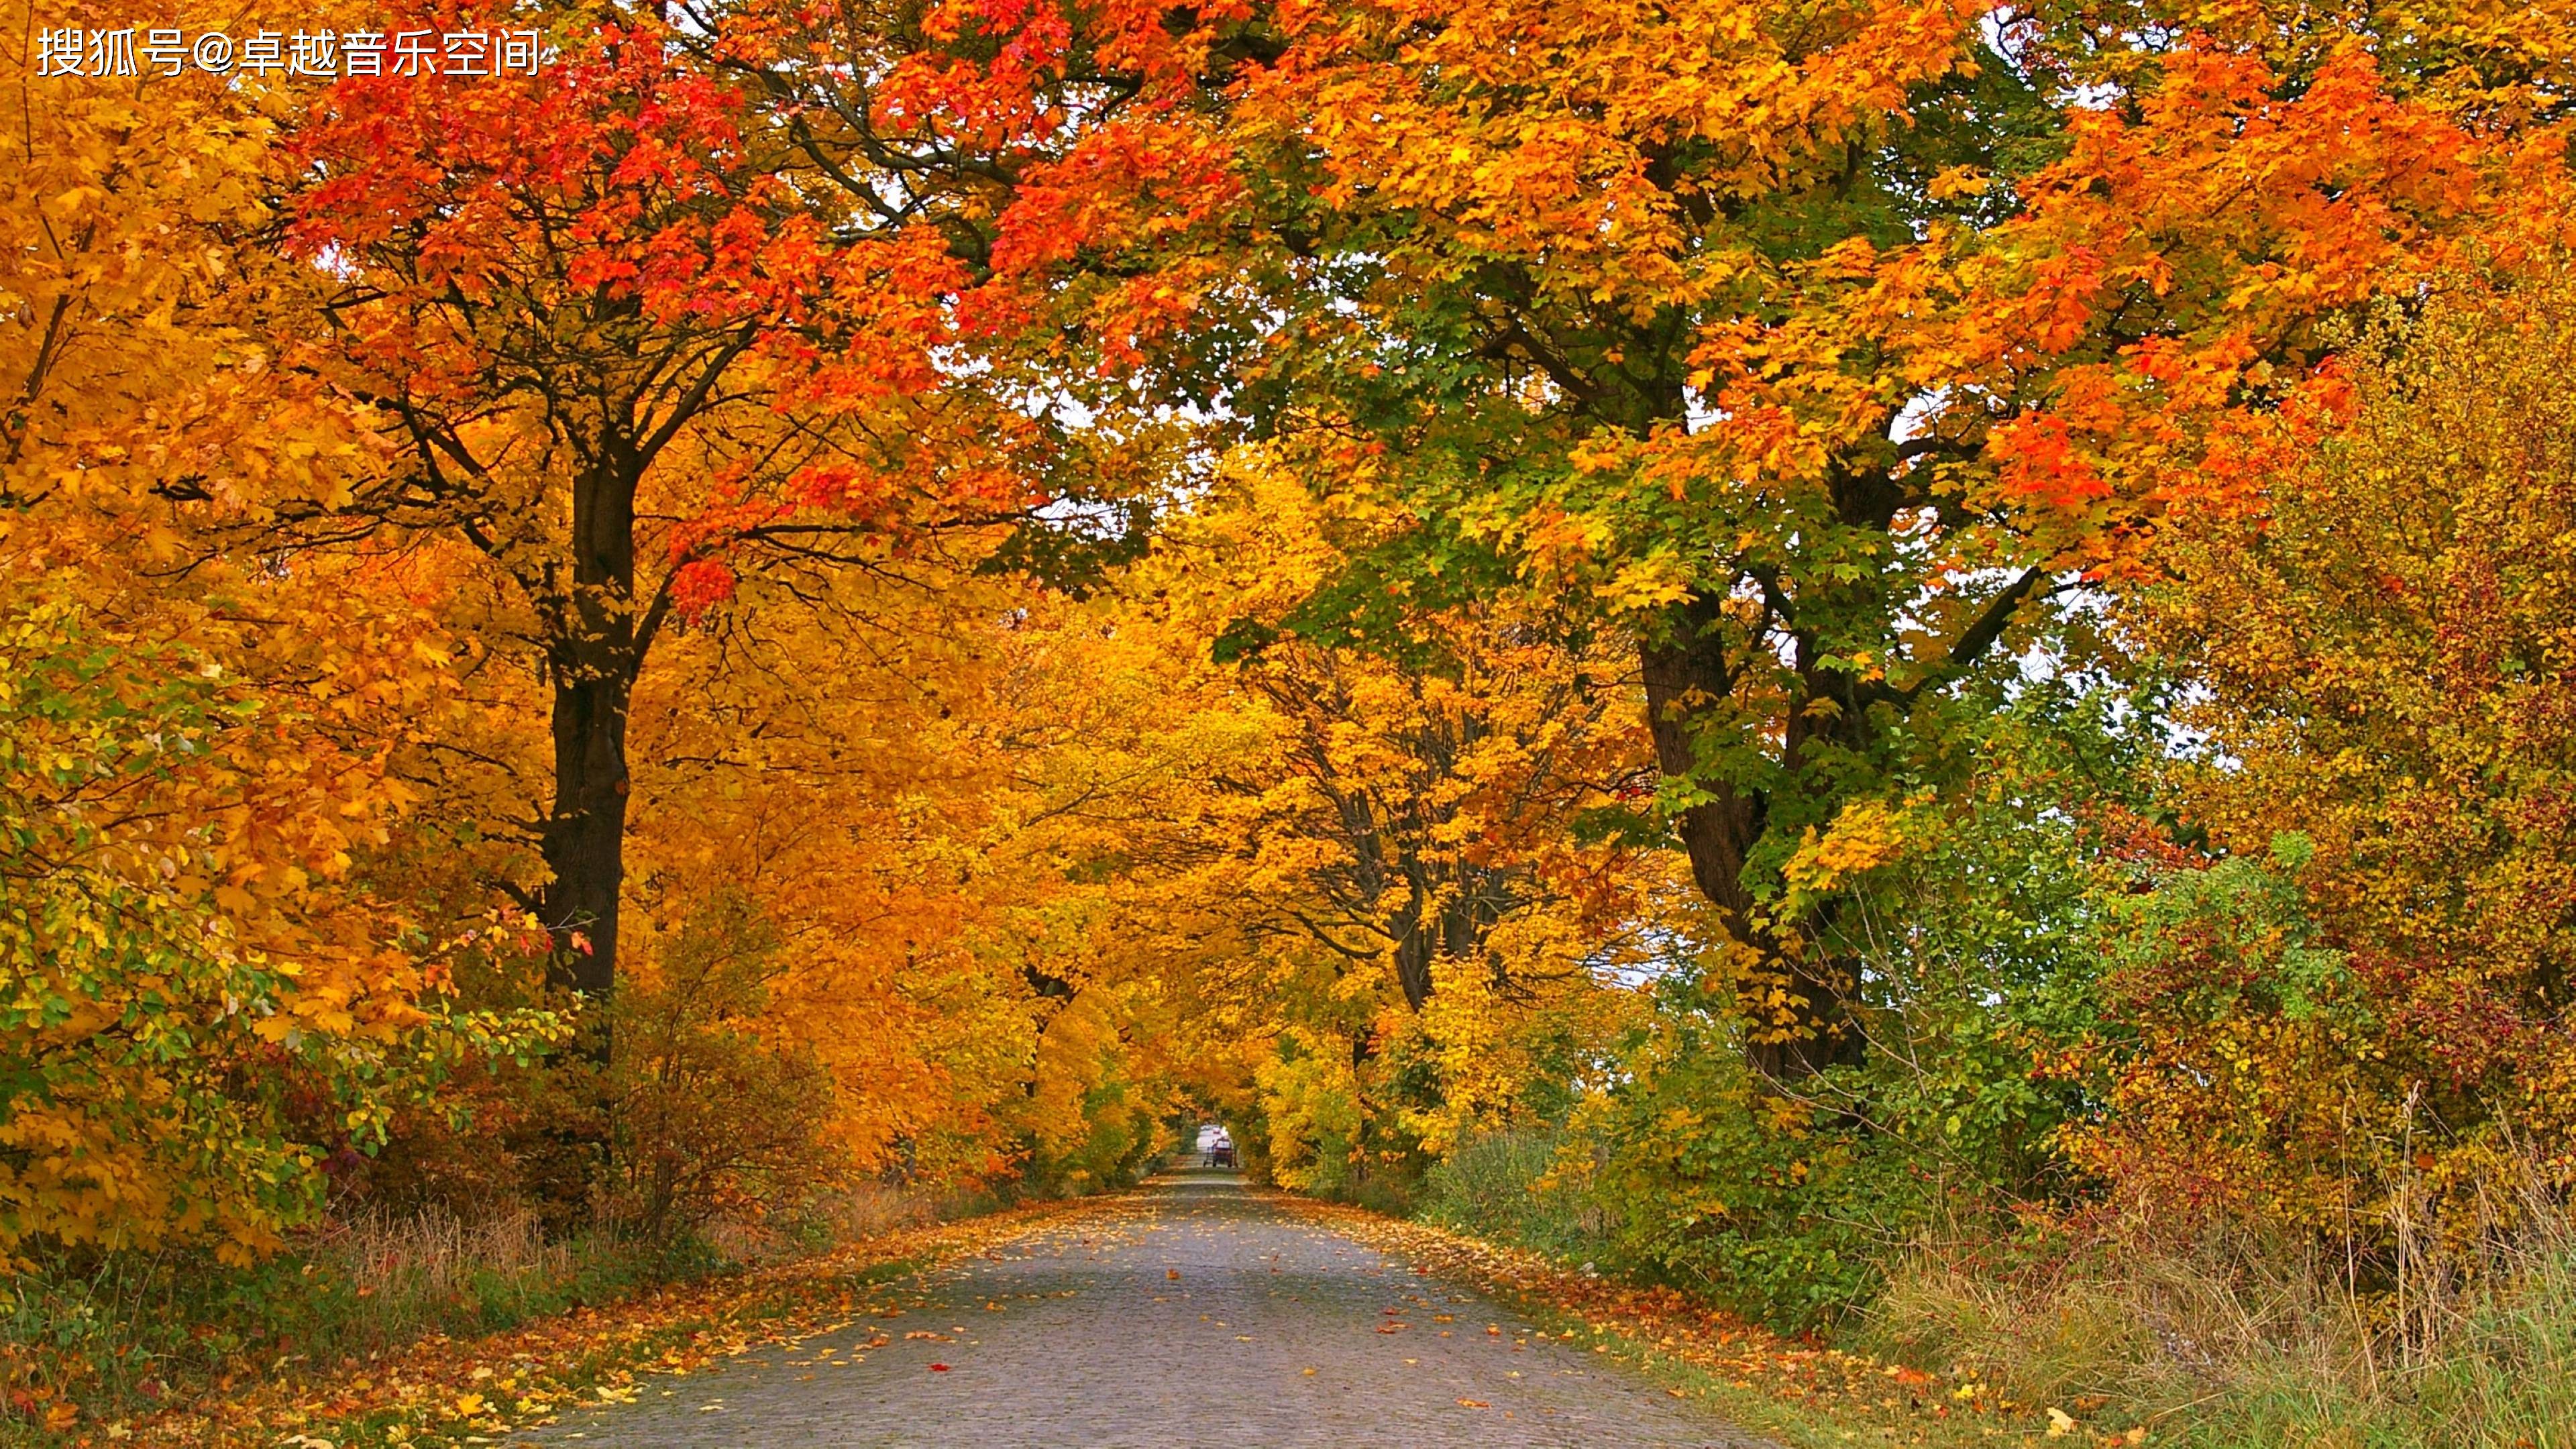 丰收的季节,唯美的色彩,感受下惬意的秋天